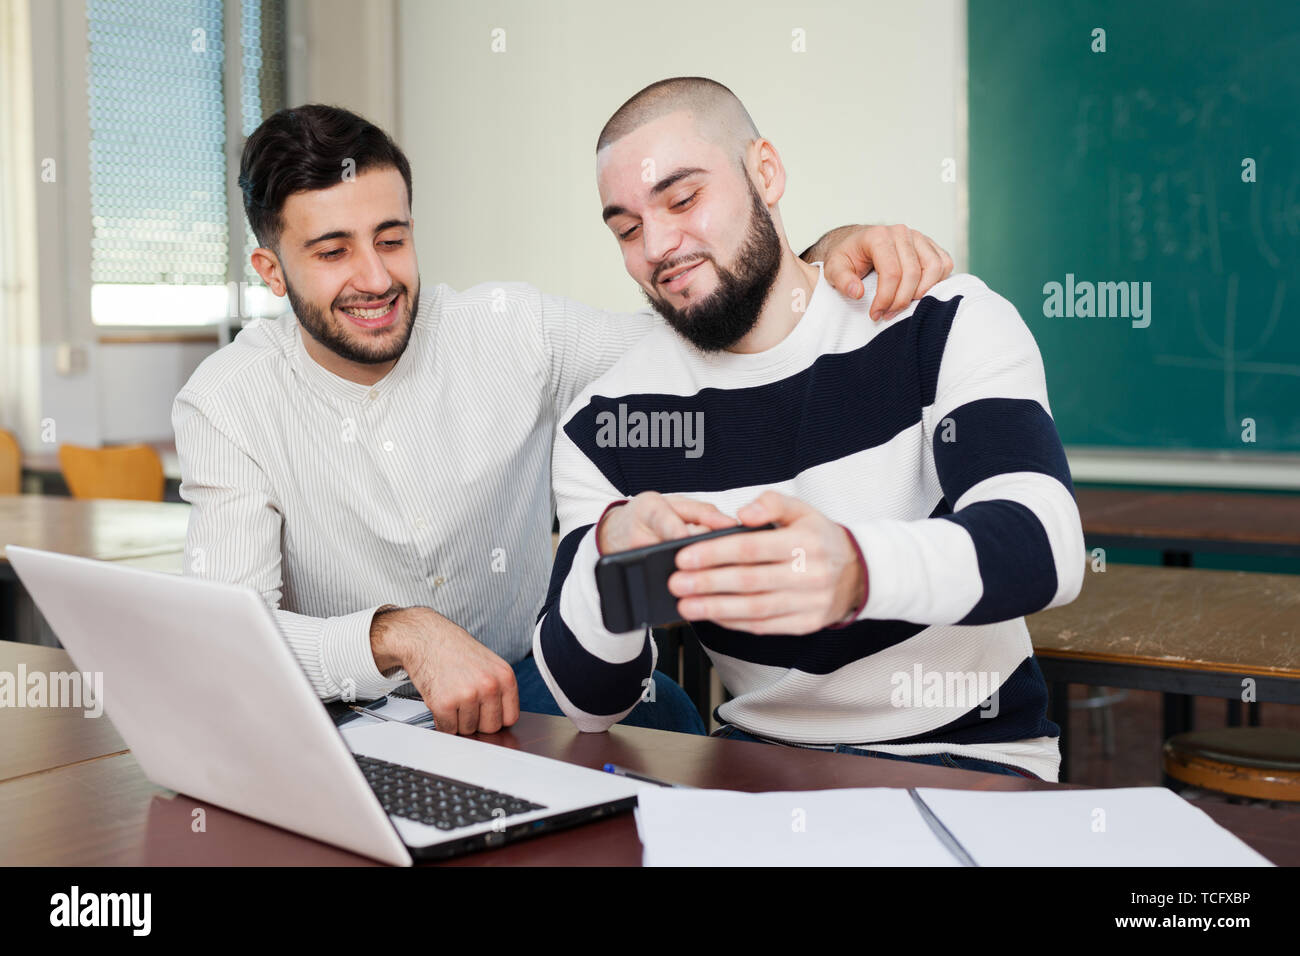 Zwei junge Studenten ablenken von ihren Studien und Beobachten bei Gadget Stockfoto